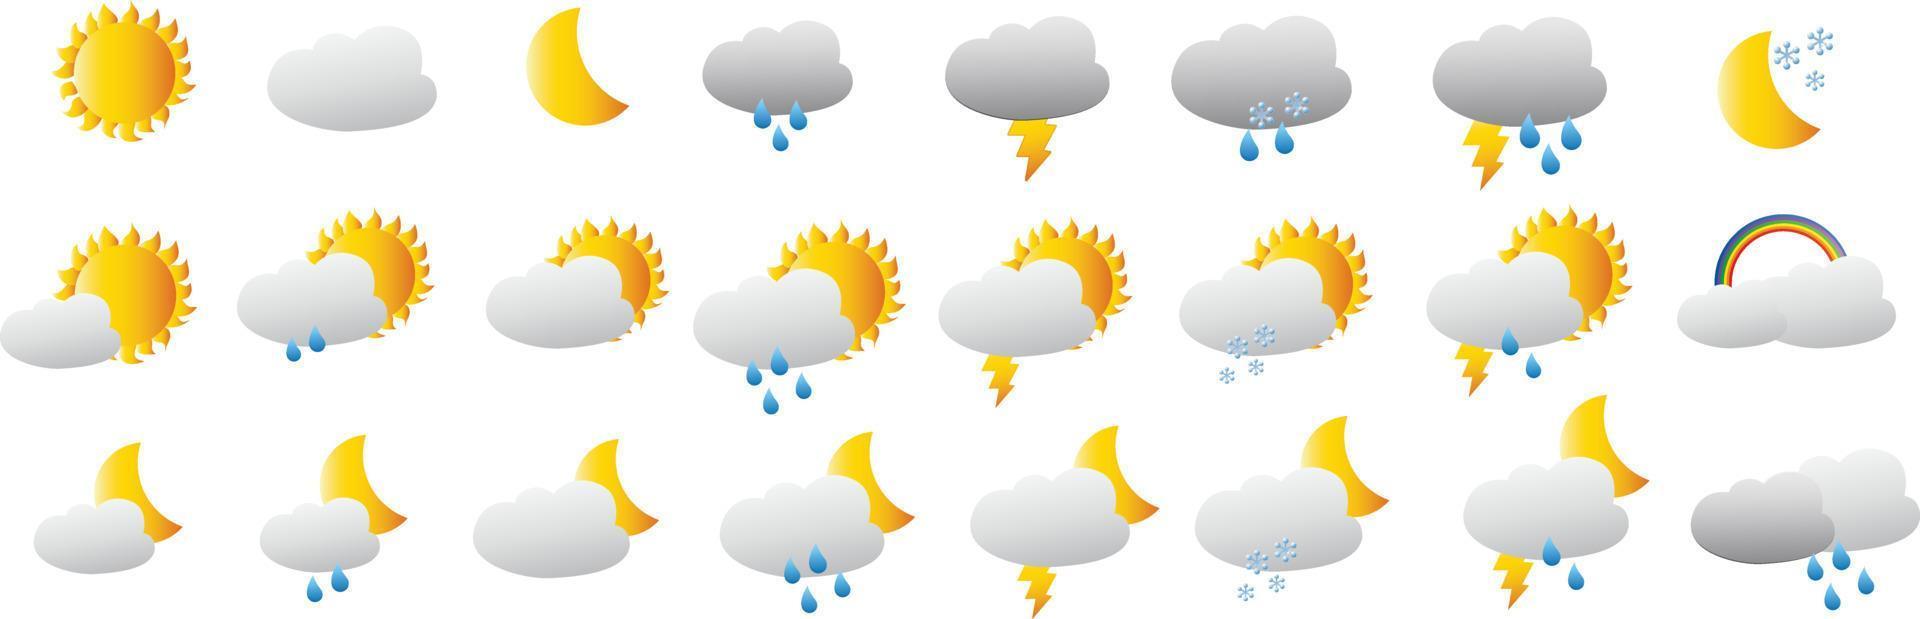 colección de iconos de clima realista. nube, sol, luna, nieve, copo de nieve, lluvia, tormenta, signos, conjunto de símbolos de color de clima aislado ilustración de sitio web de vector de meteorología